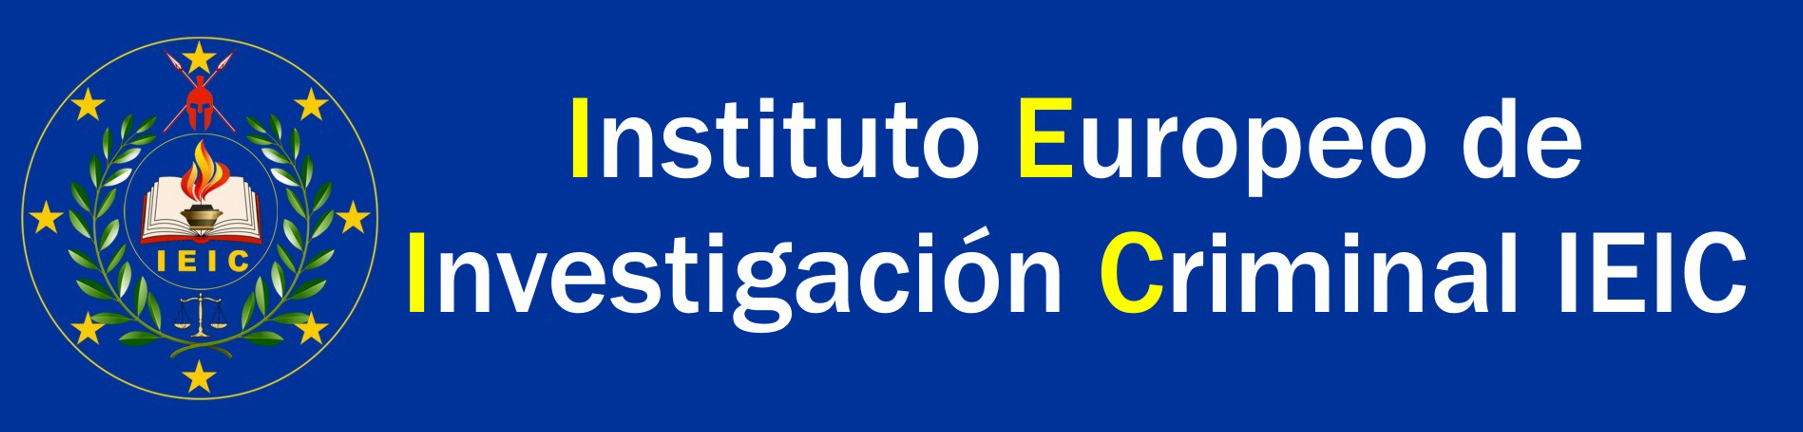 Instituto Europeo de Investigación Criminal